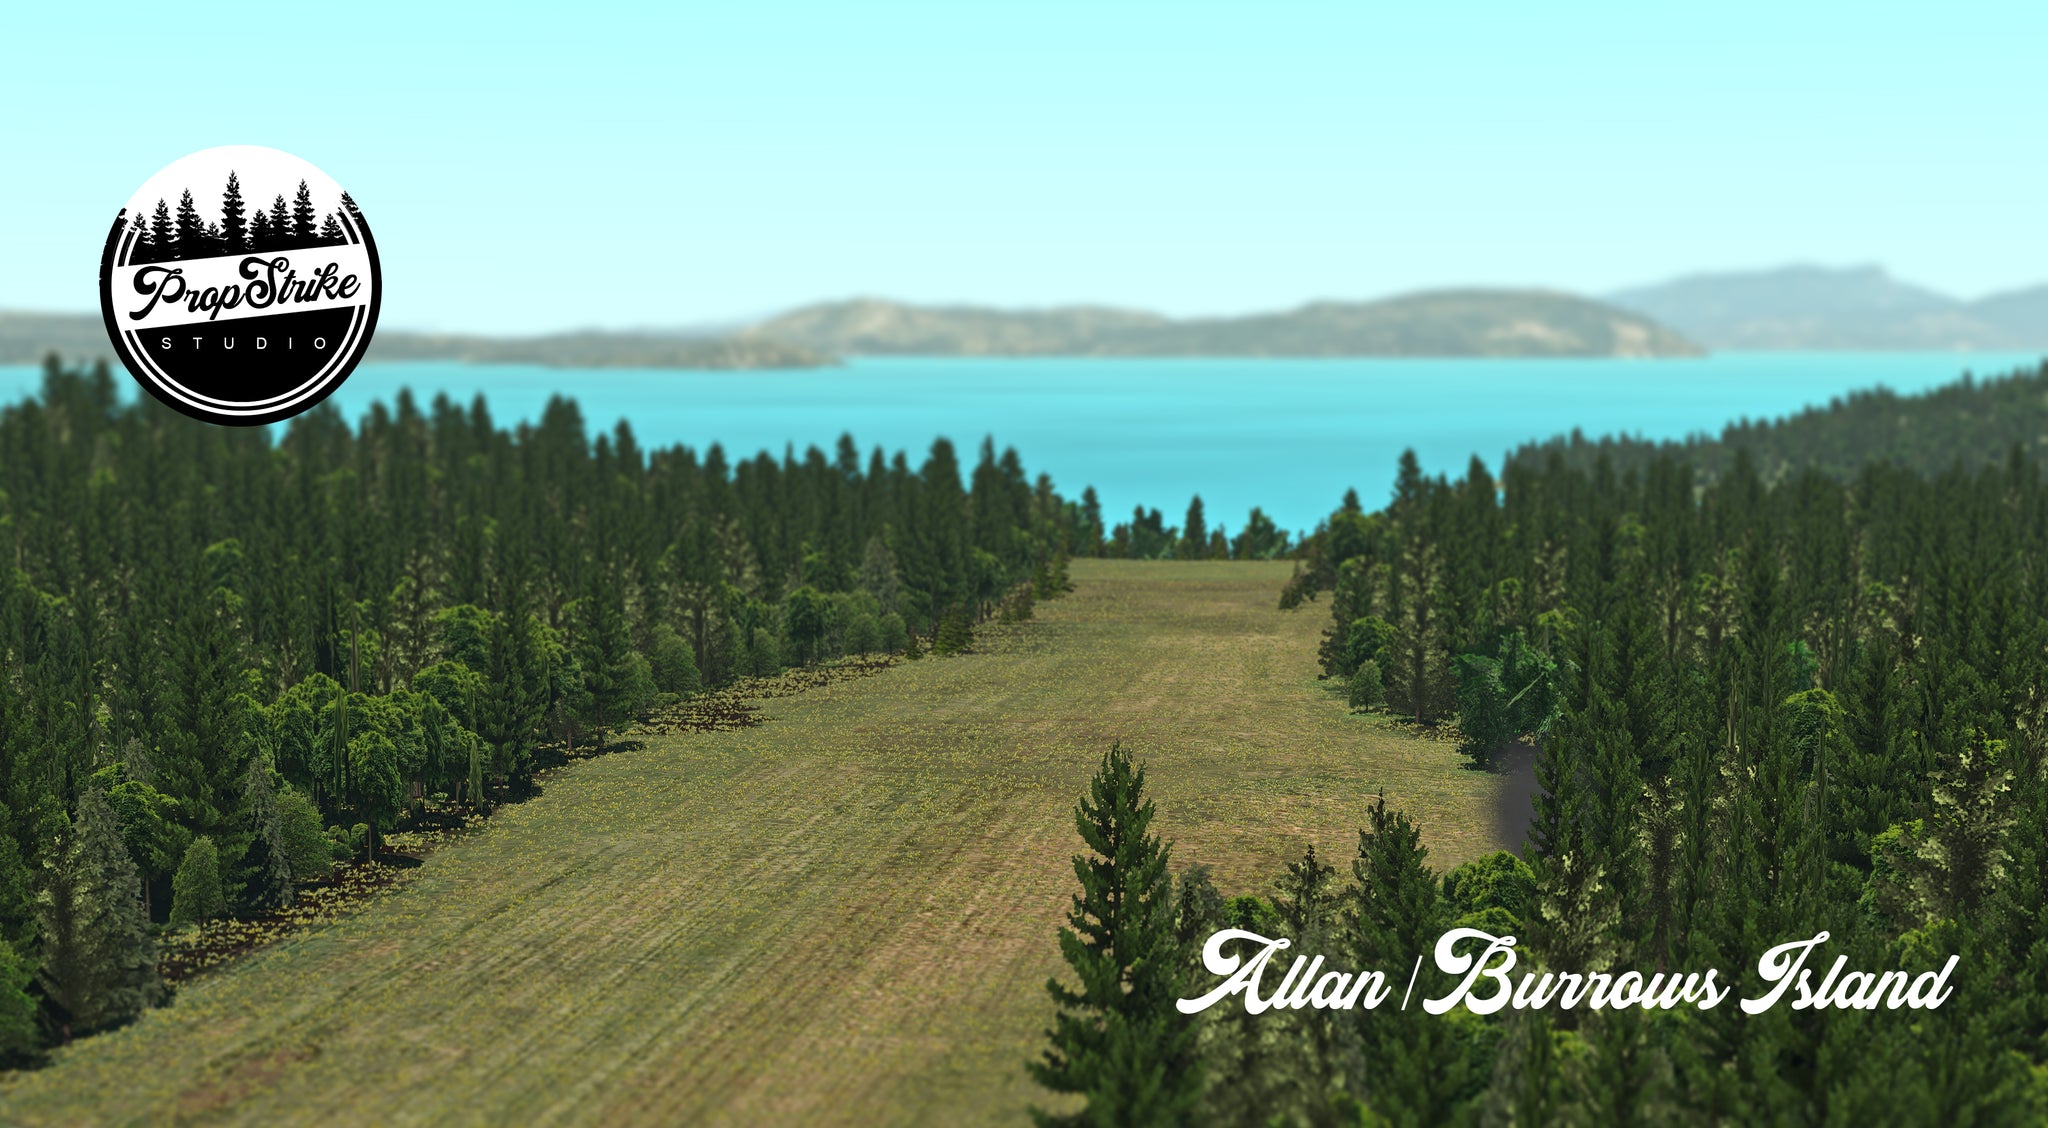 Allan Burrows Island